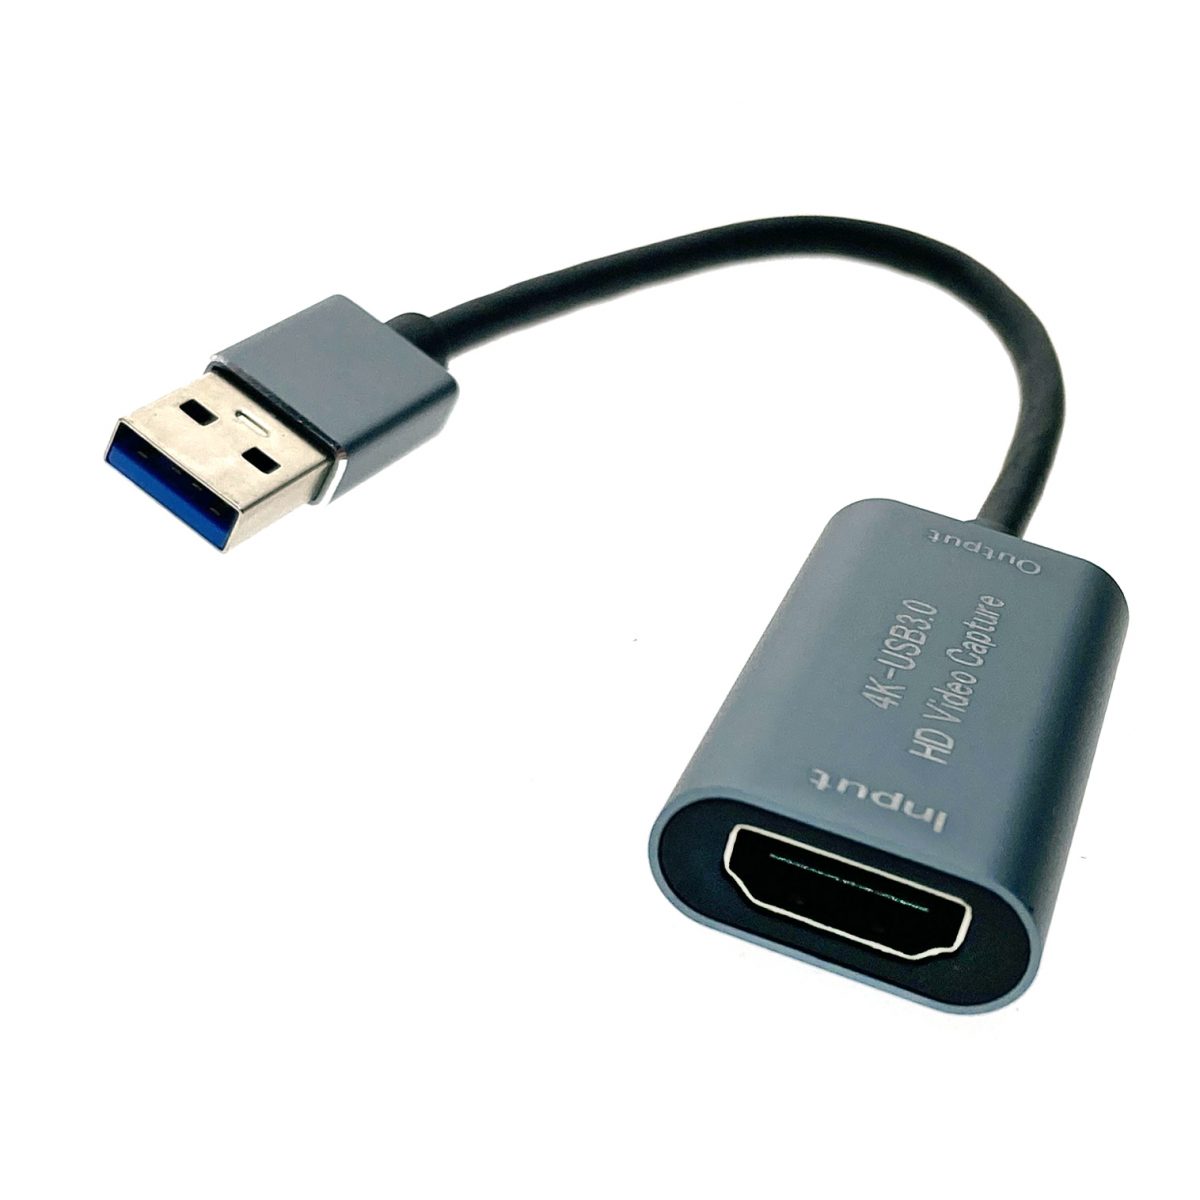 Карта видеозахвата HDMI to USB3.0, 1080P@60Hz чипсет MS2130, модель EVihu3, Espada